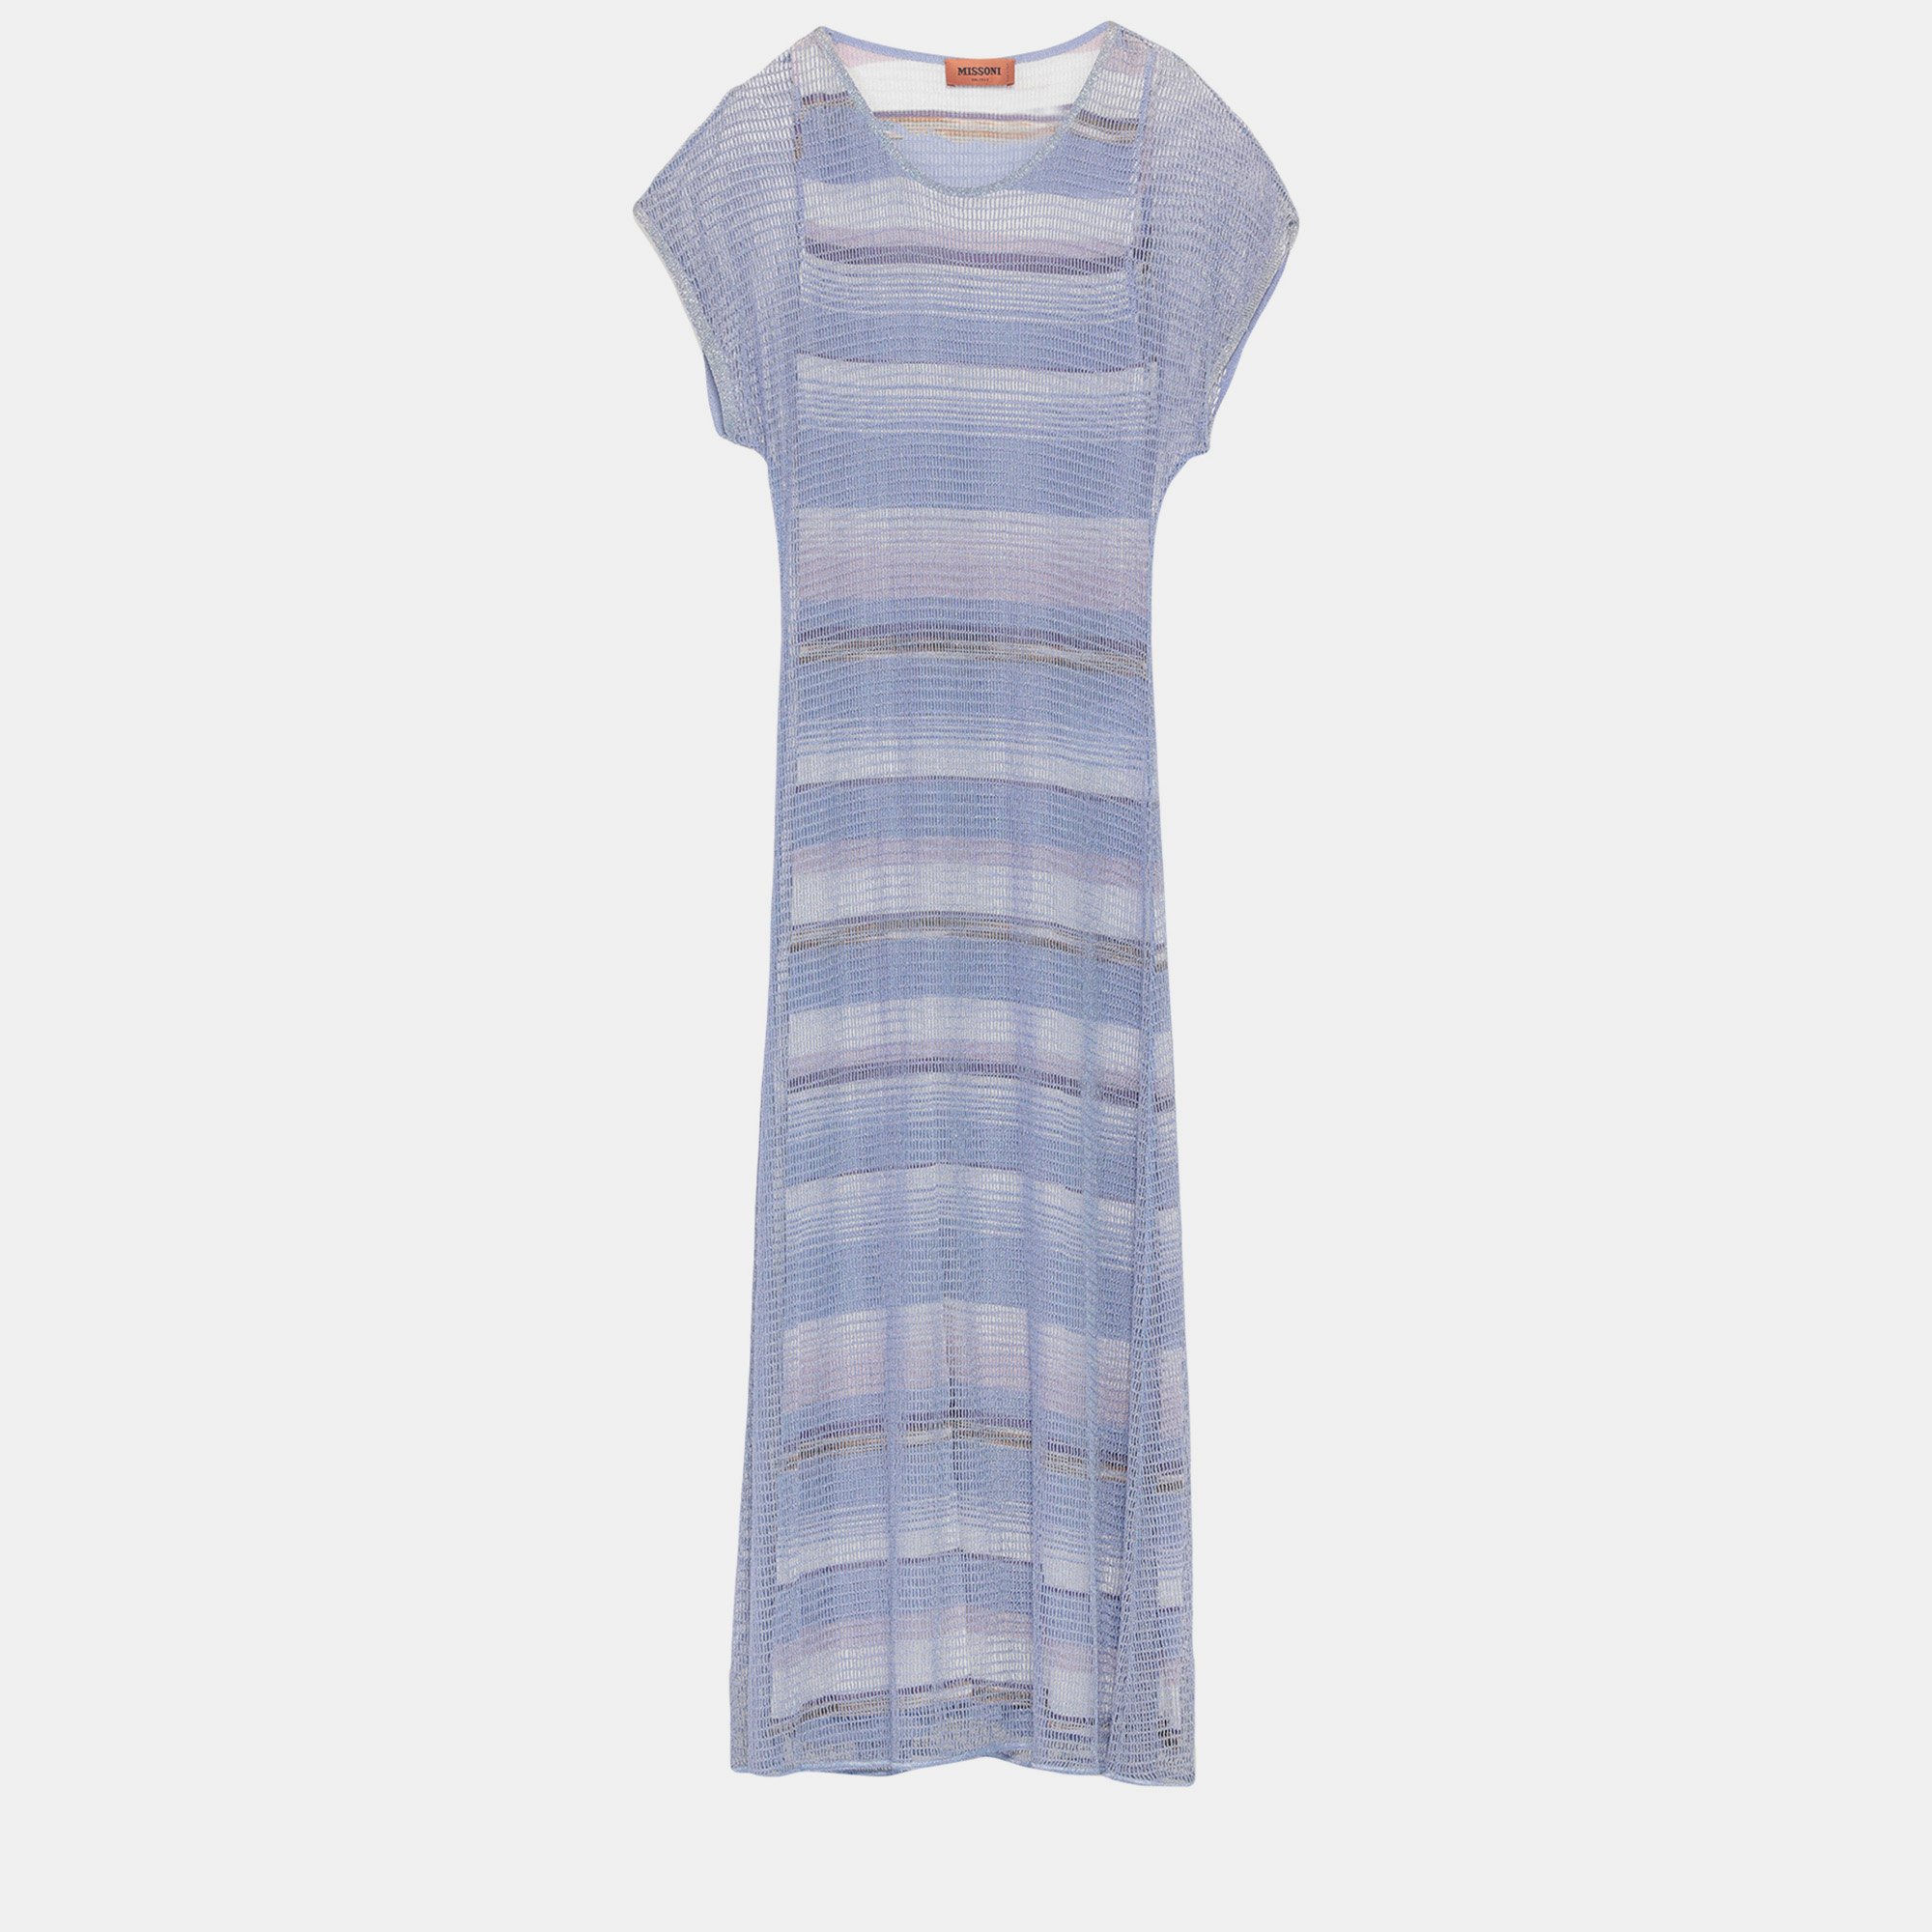 Missoni blue lurex knit overlay striped maxi dress xs (it 38)